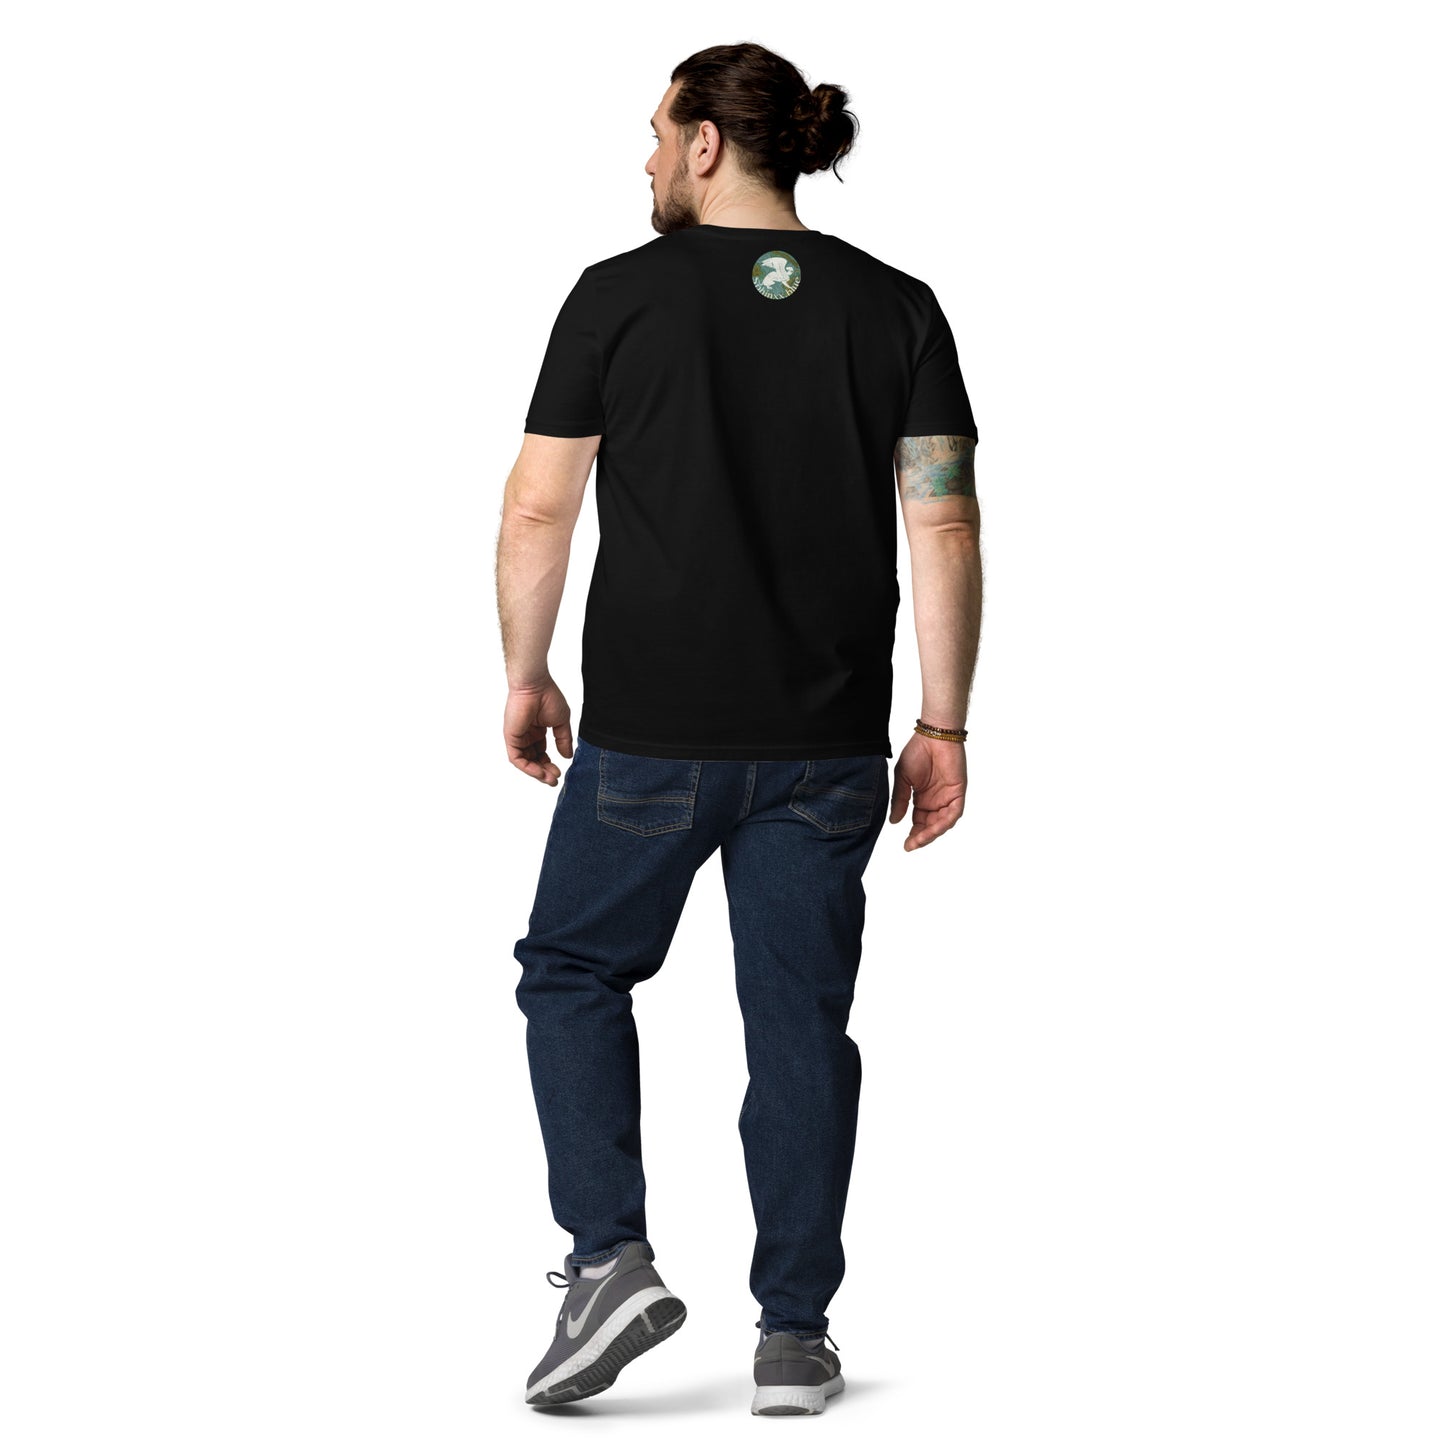 Énigme #41 - Mort & Vie - T-shirt unisexe en coton biologique - imprimé avant/arrière